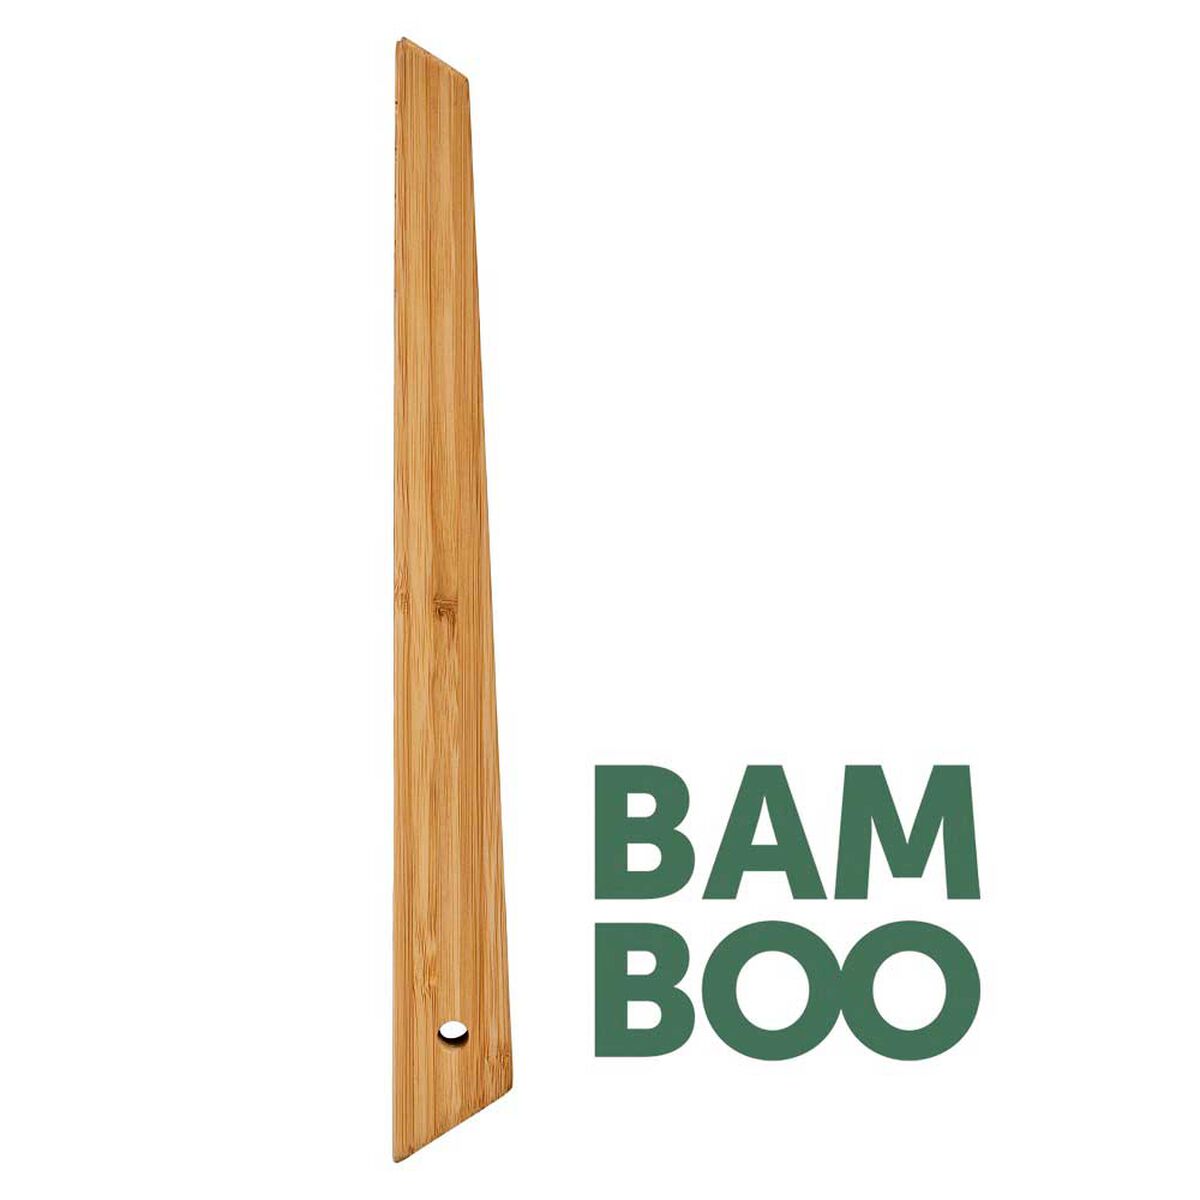 Pinza para Parrilla Dangrill de Bambú 28 cm